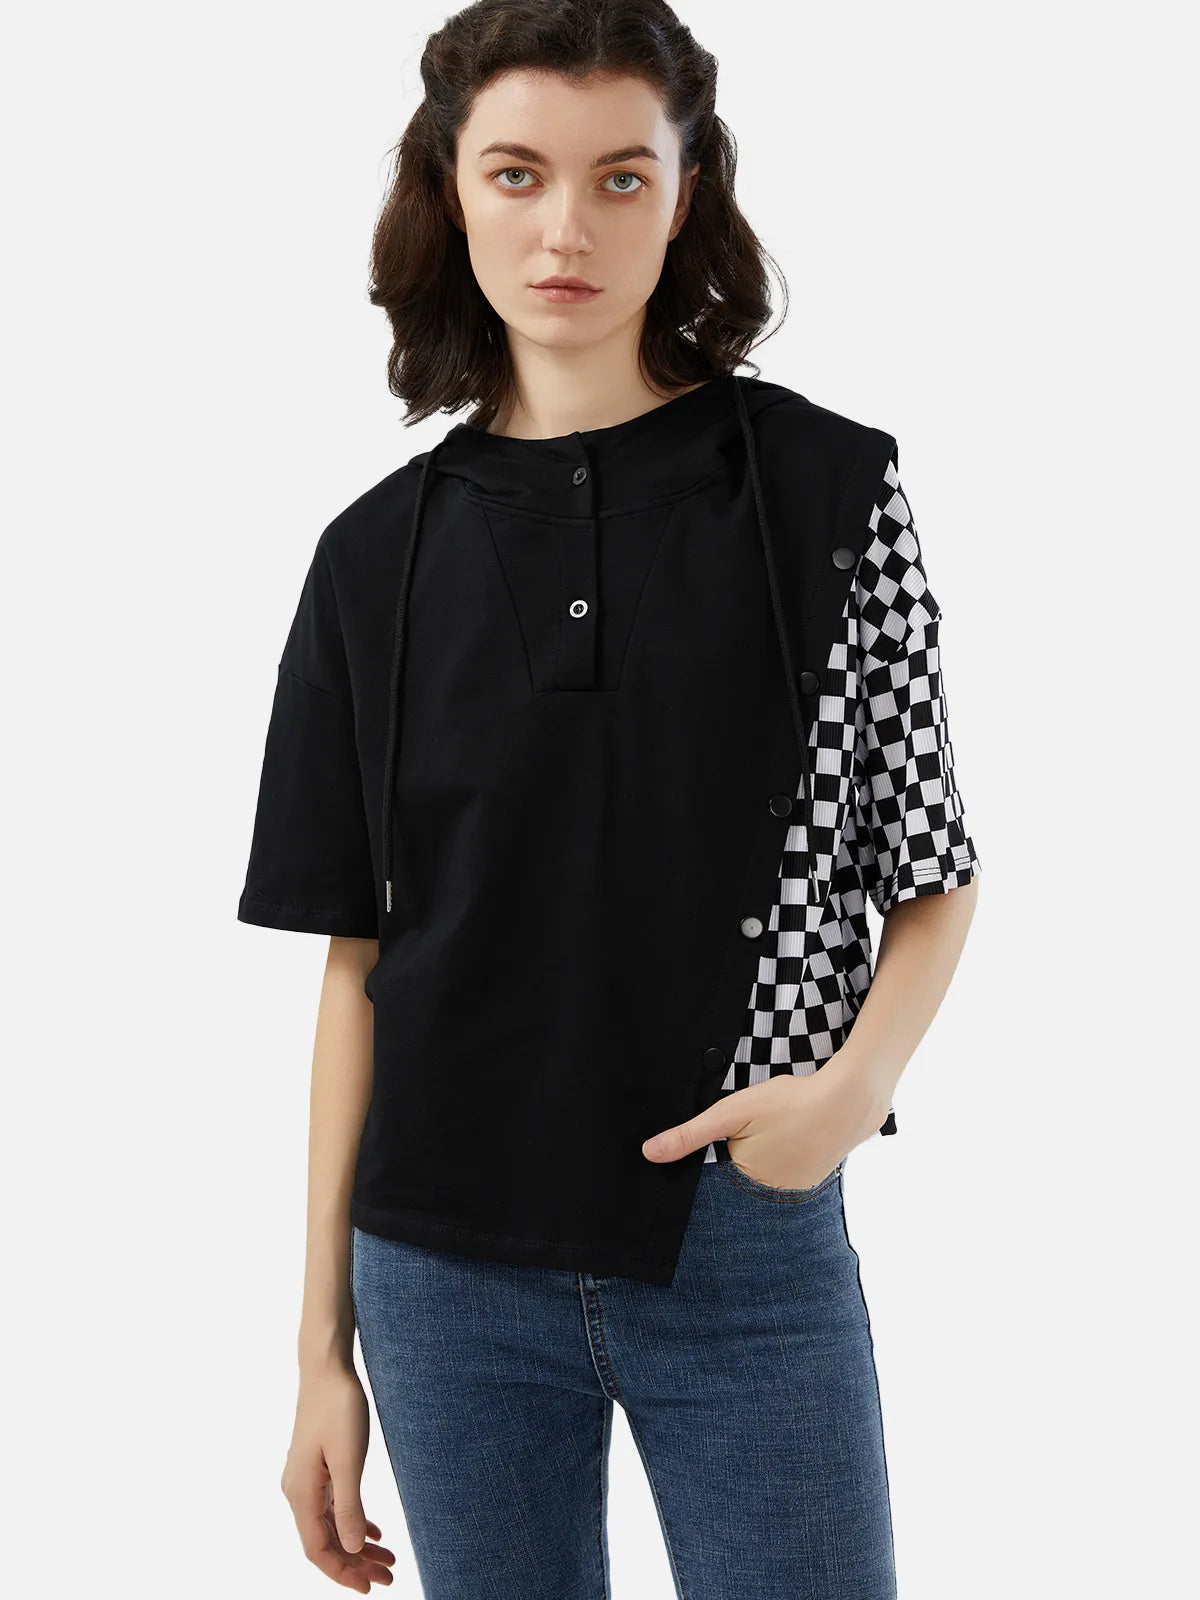 Camiseta irregular con capucha y bloques de color